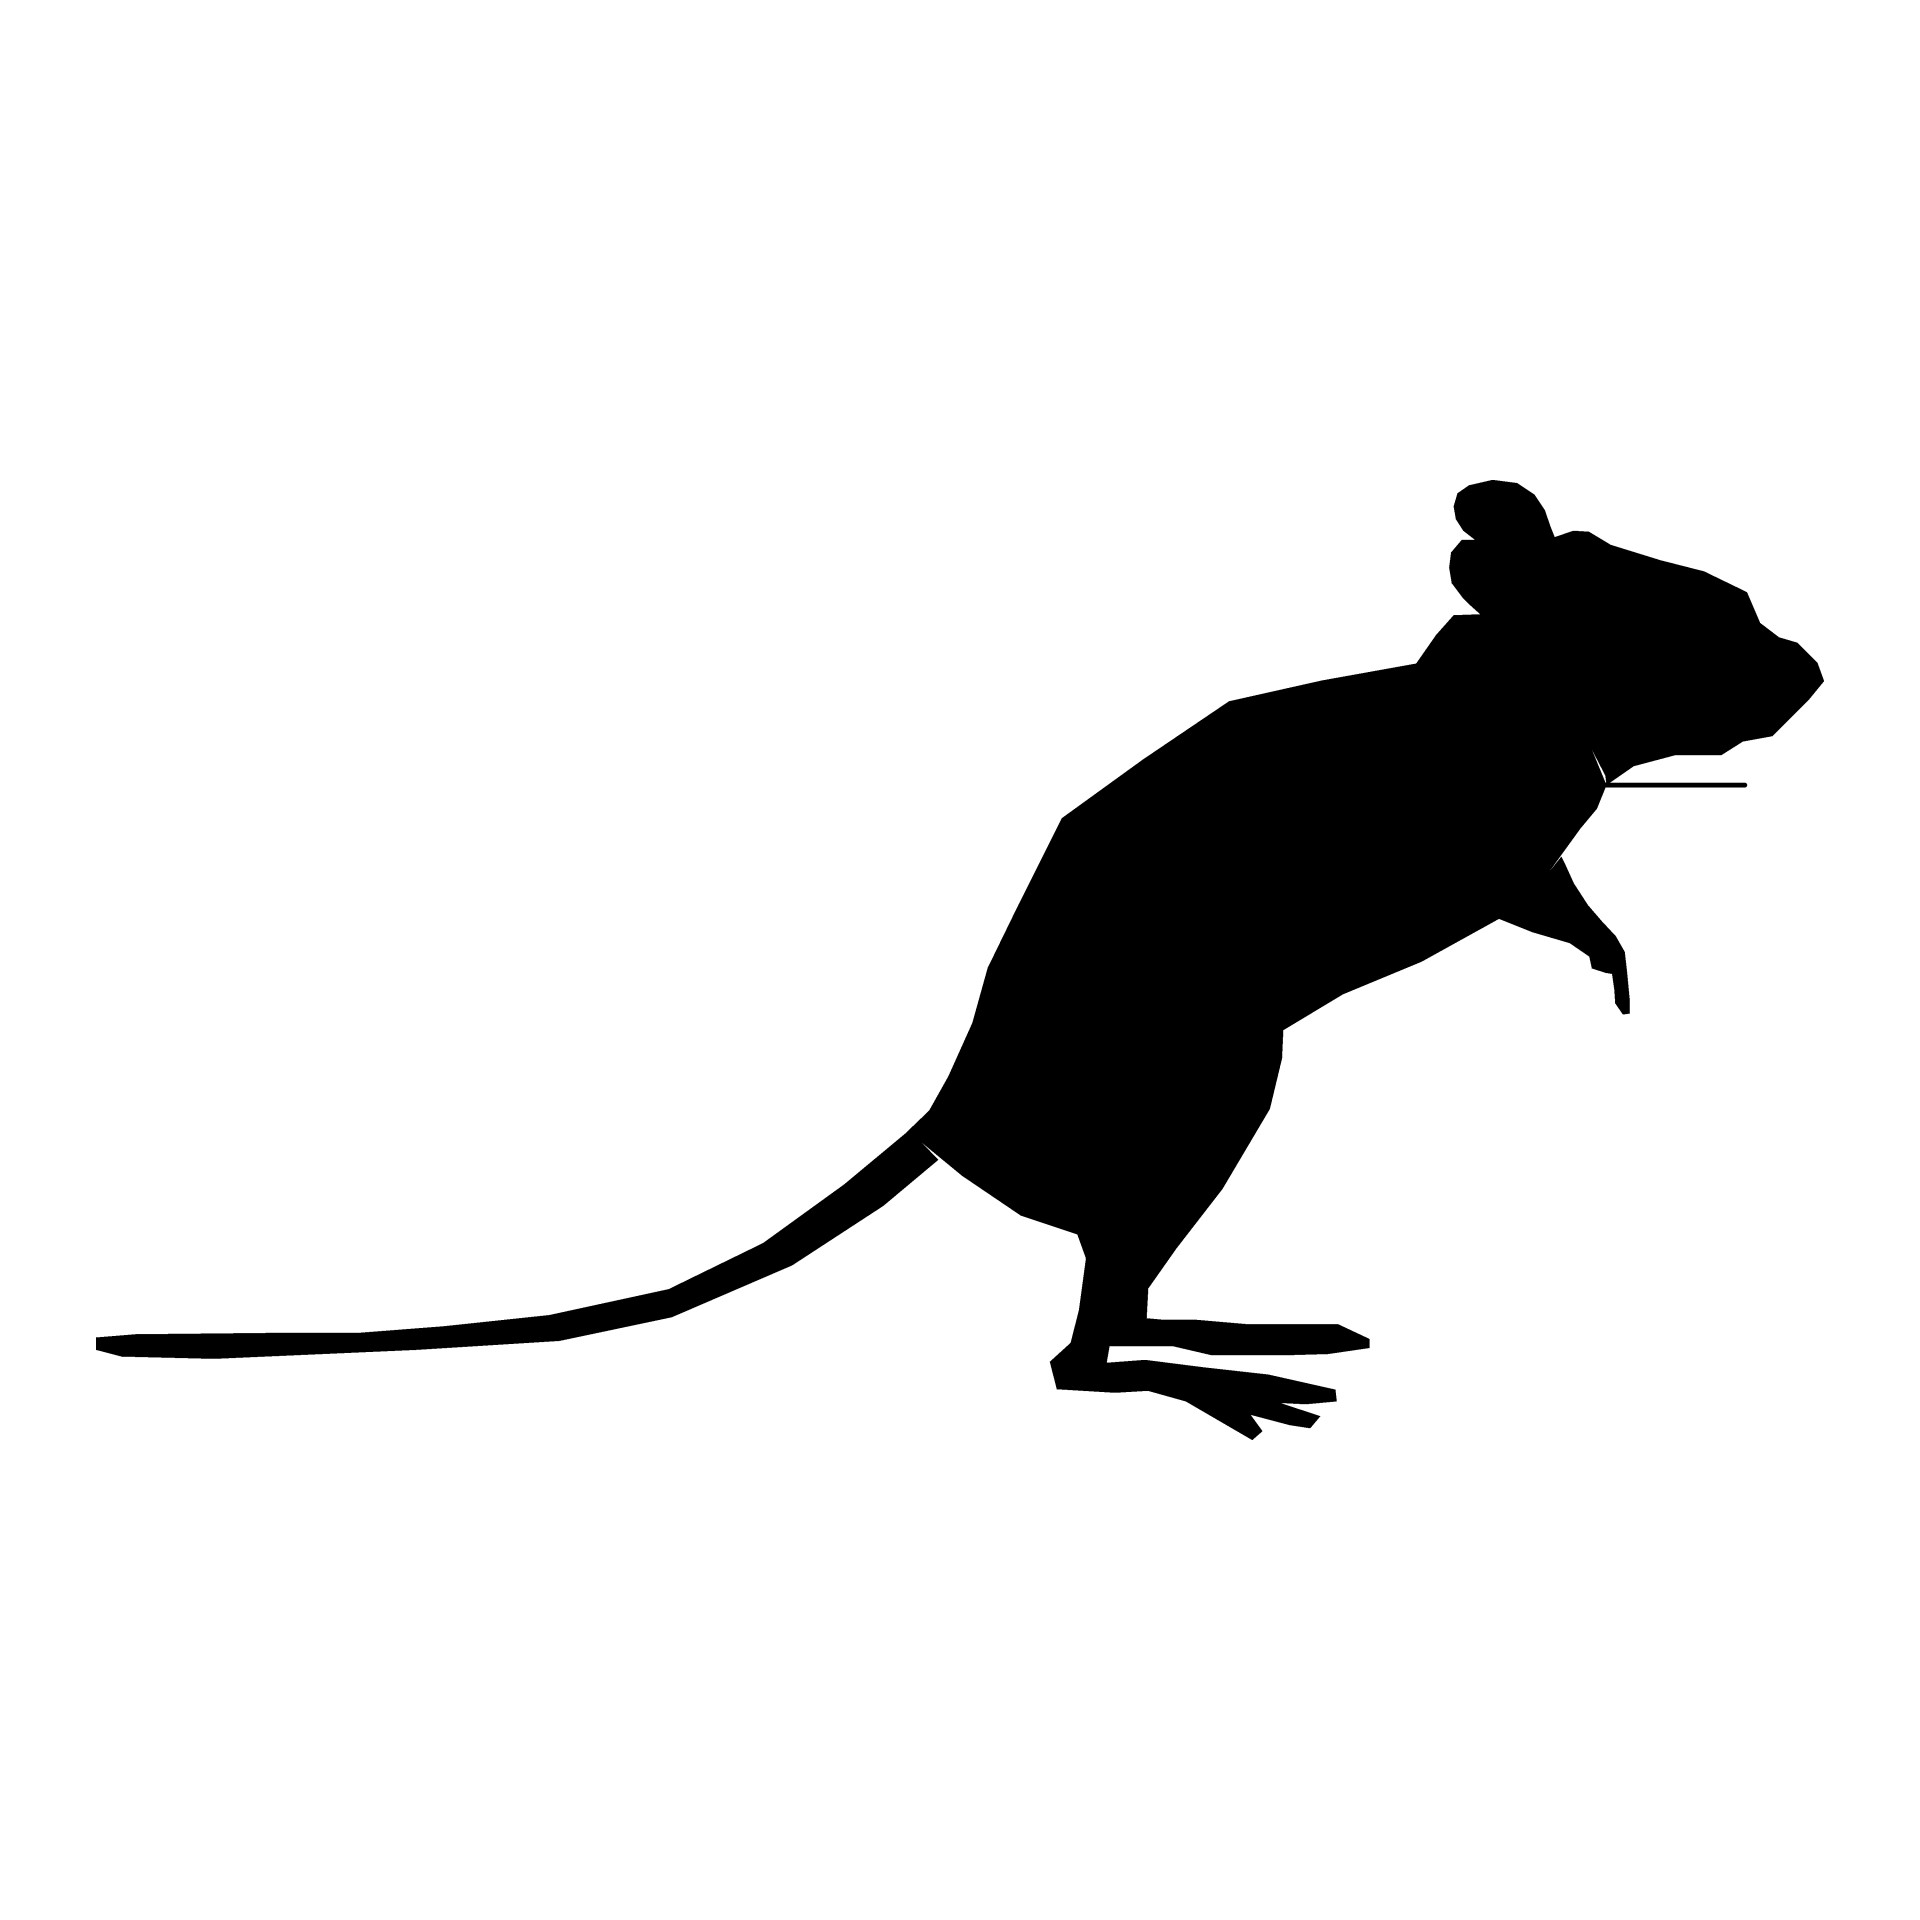 Silhouette Rat Images - Public Domain Pictures - Page 1